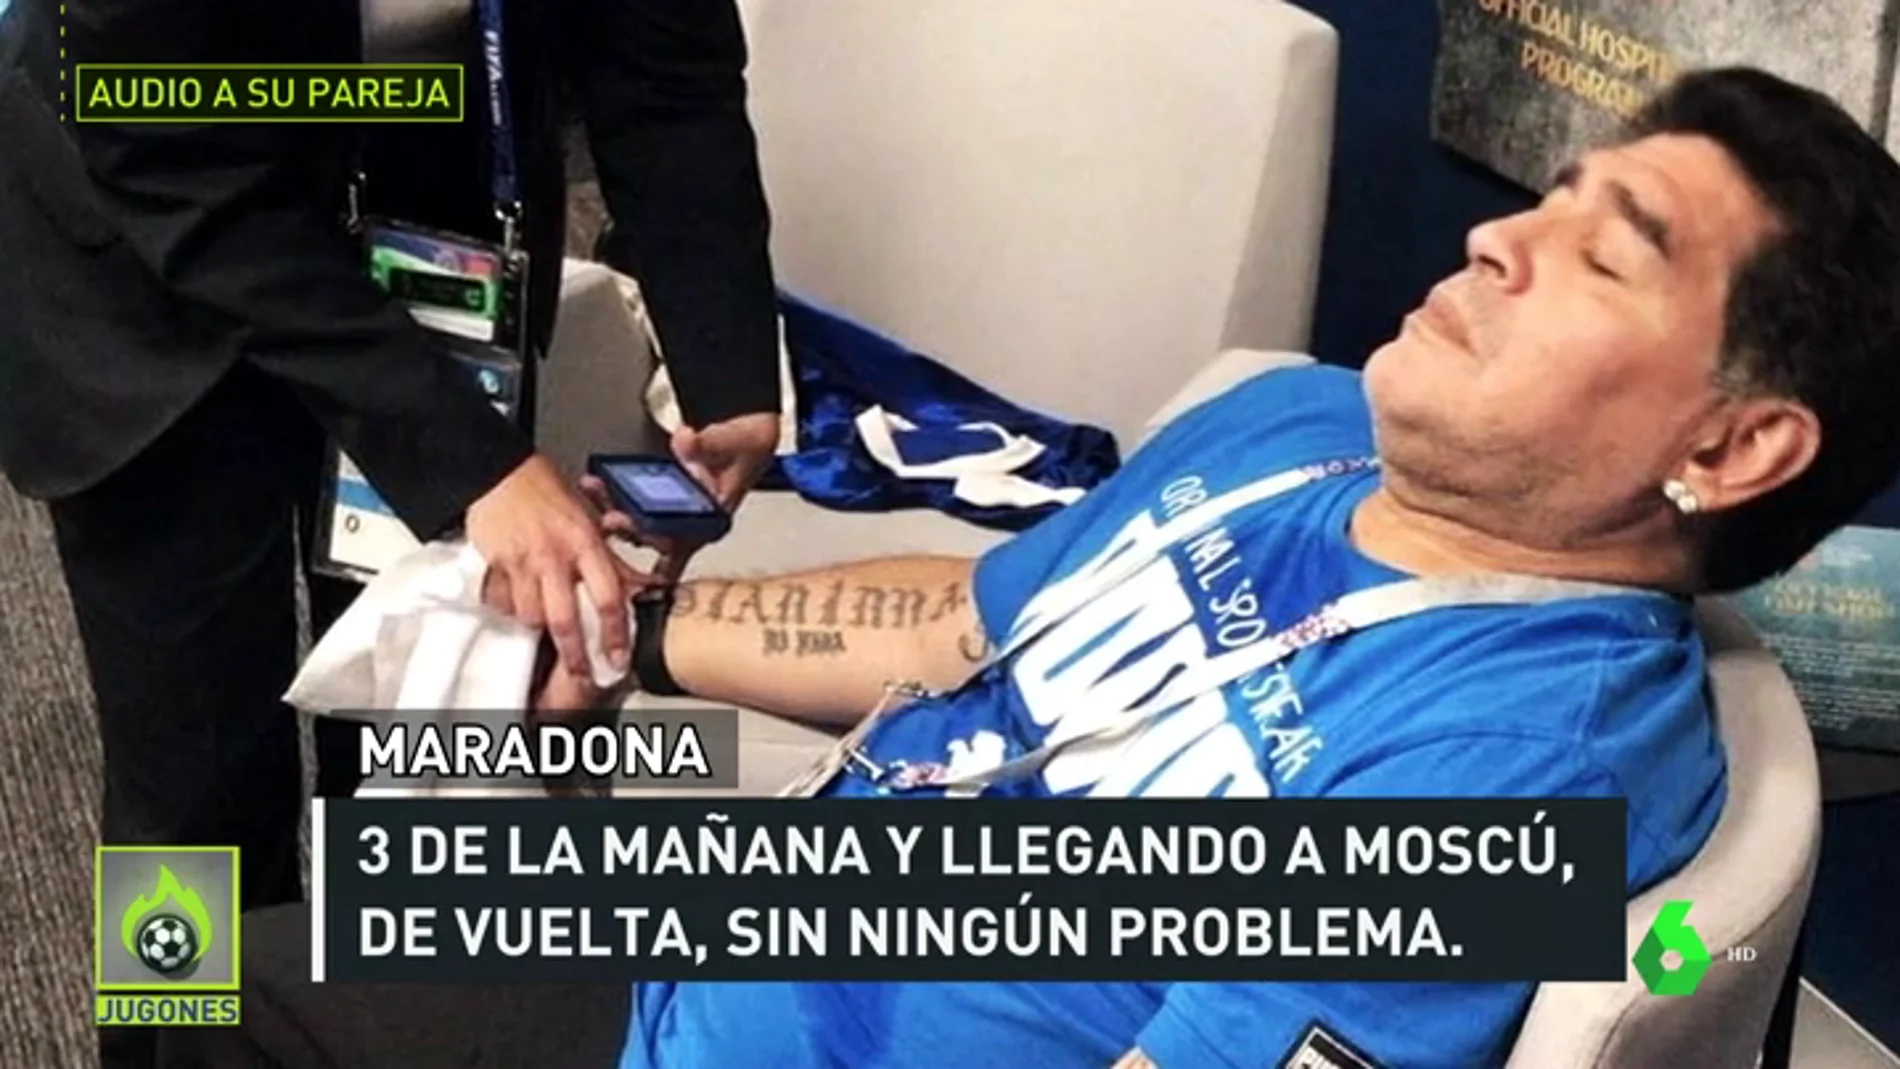 El audio filtrado de Maradona a su pareja para desmentir el bulo de su muerte